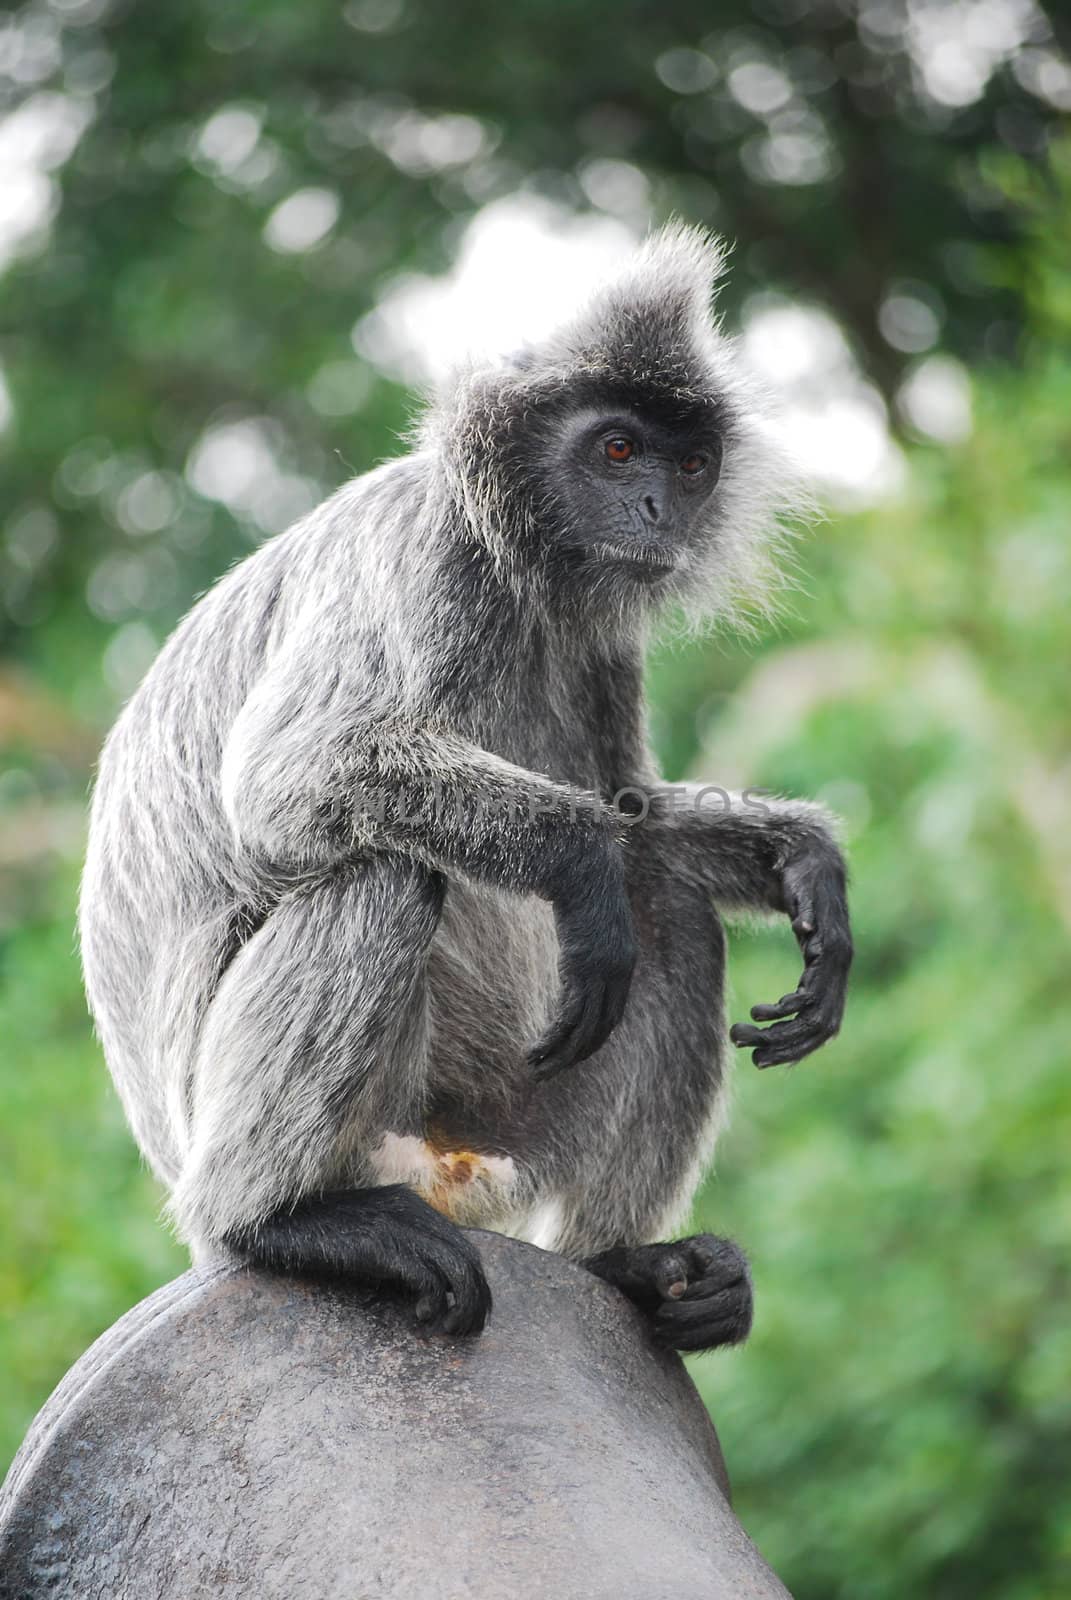 species of silverleaf monkey